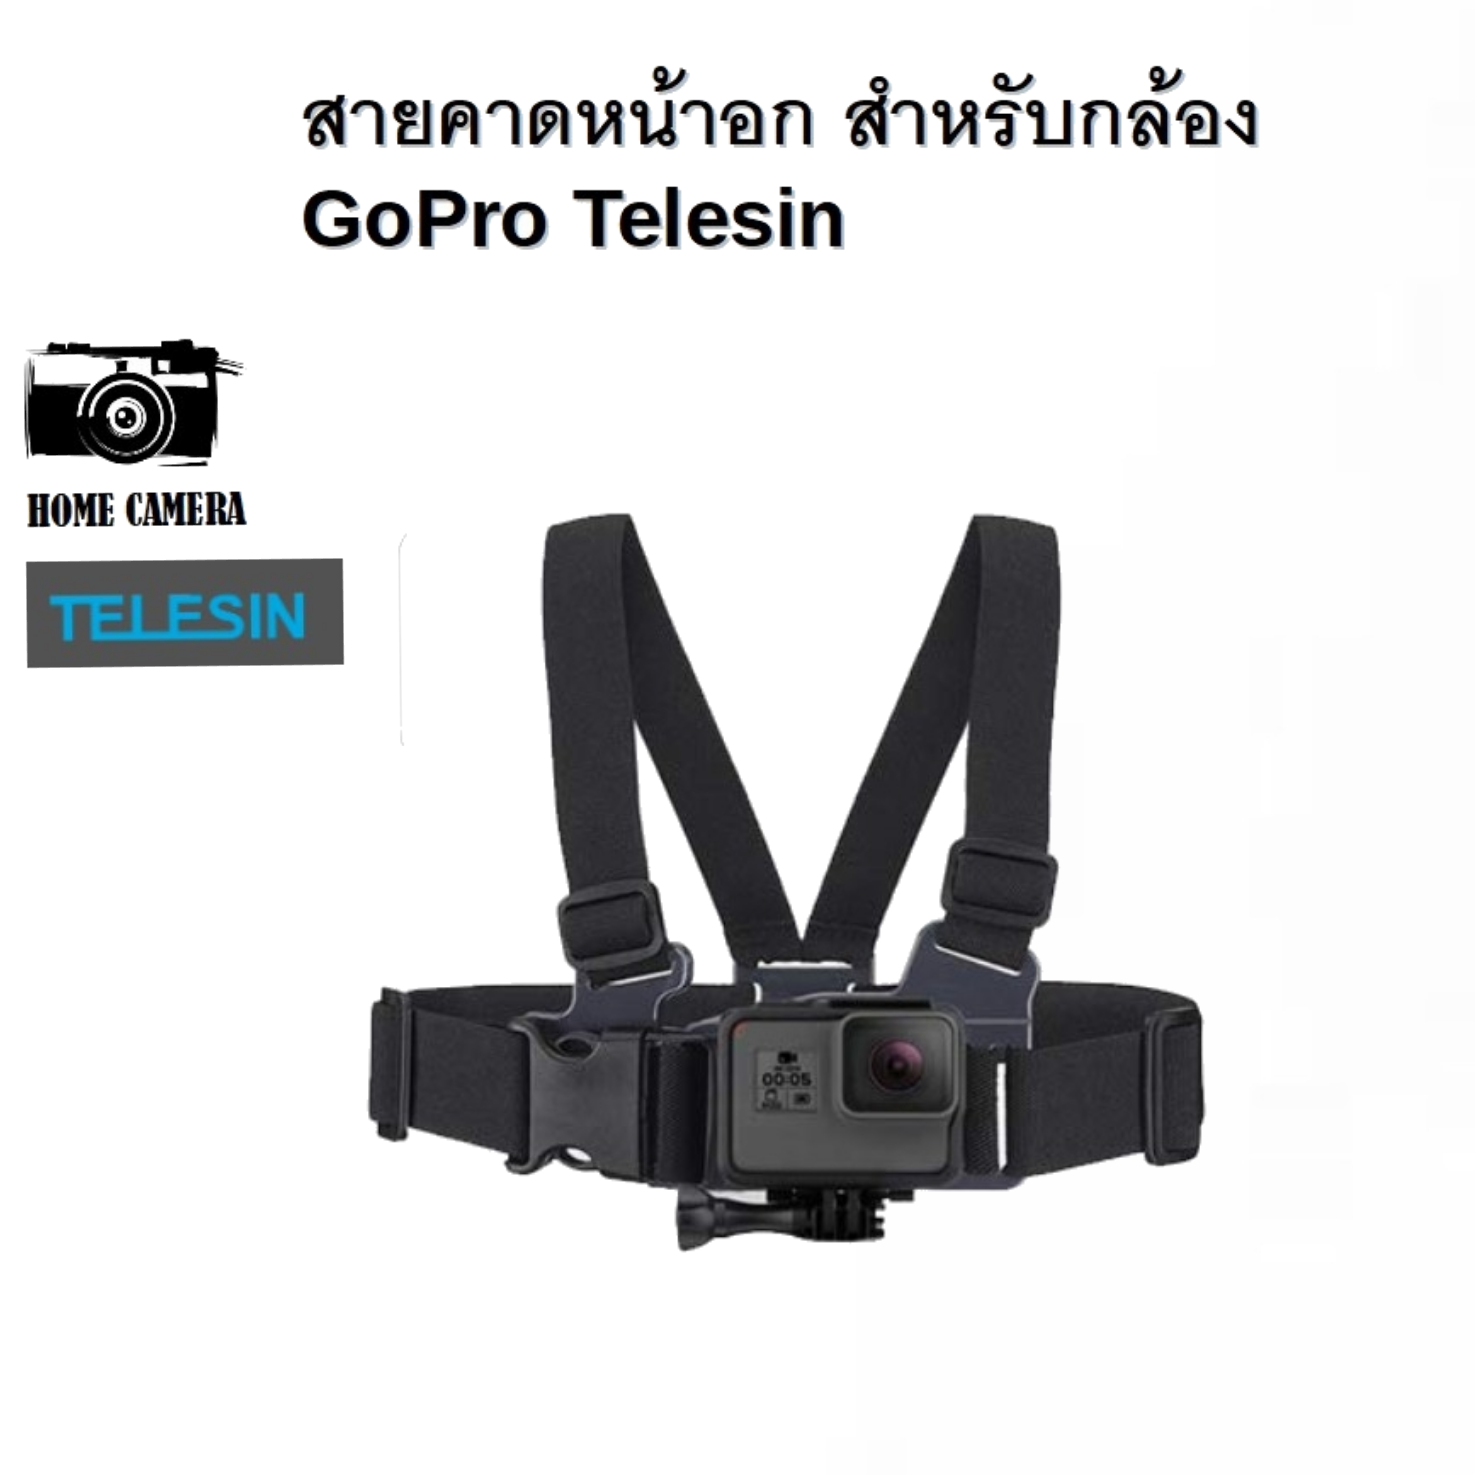 สายคาดอก Gopro Telesin Chest Strap อุปกรณ์เสริม gopro อุปกรณ์เสริมกล้องแอคชั่น